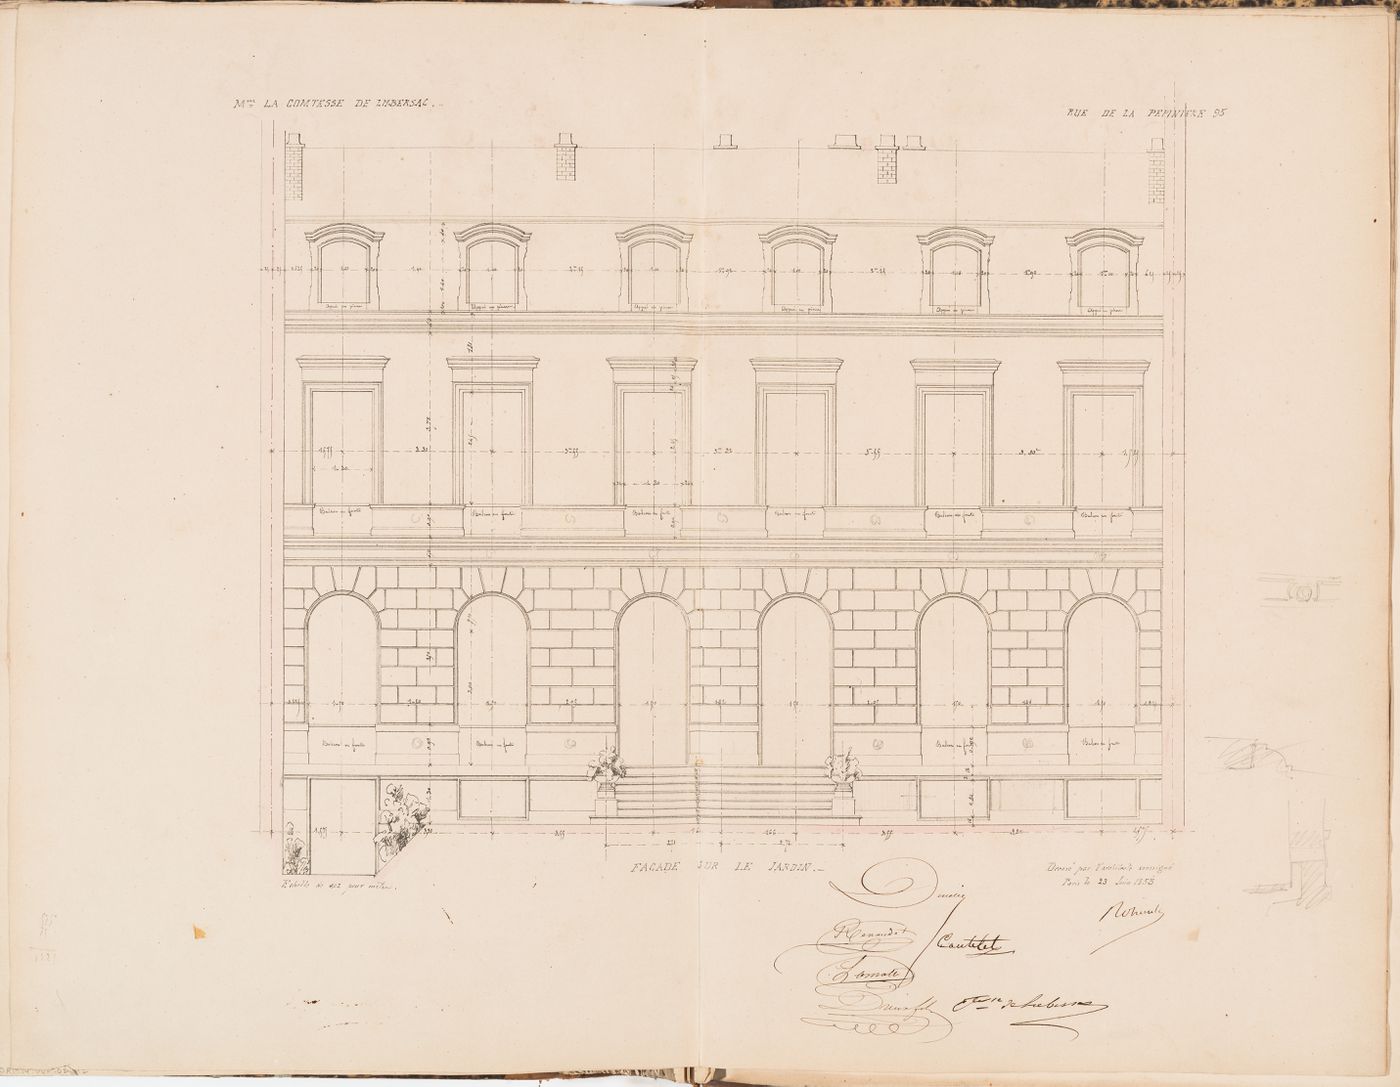 Contract drawings for a house for Madame la comtesse de Lubersac, 95 rue de la Pépinière, Paris: Elevation for the garden façade